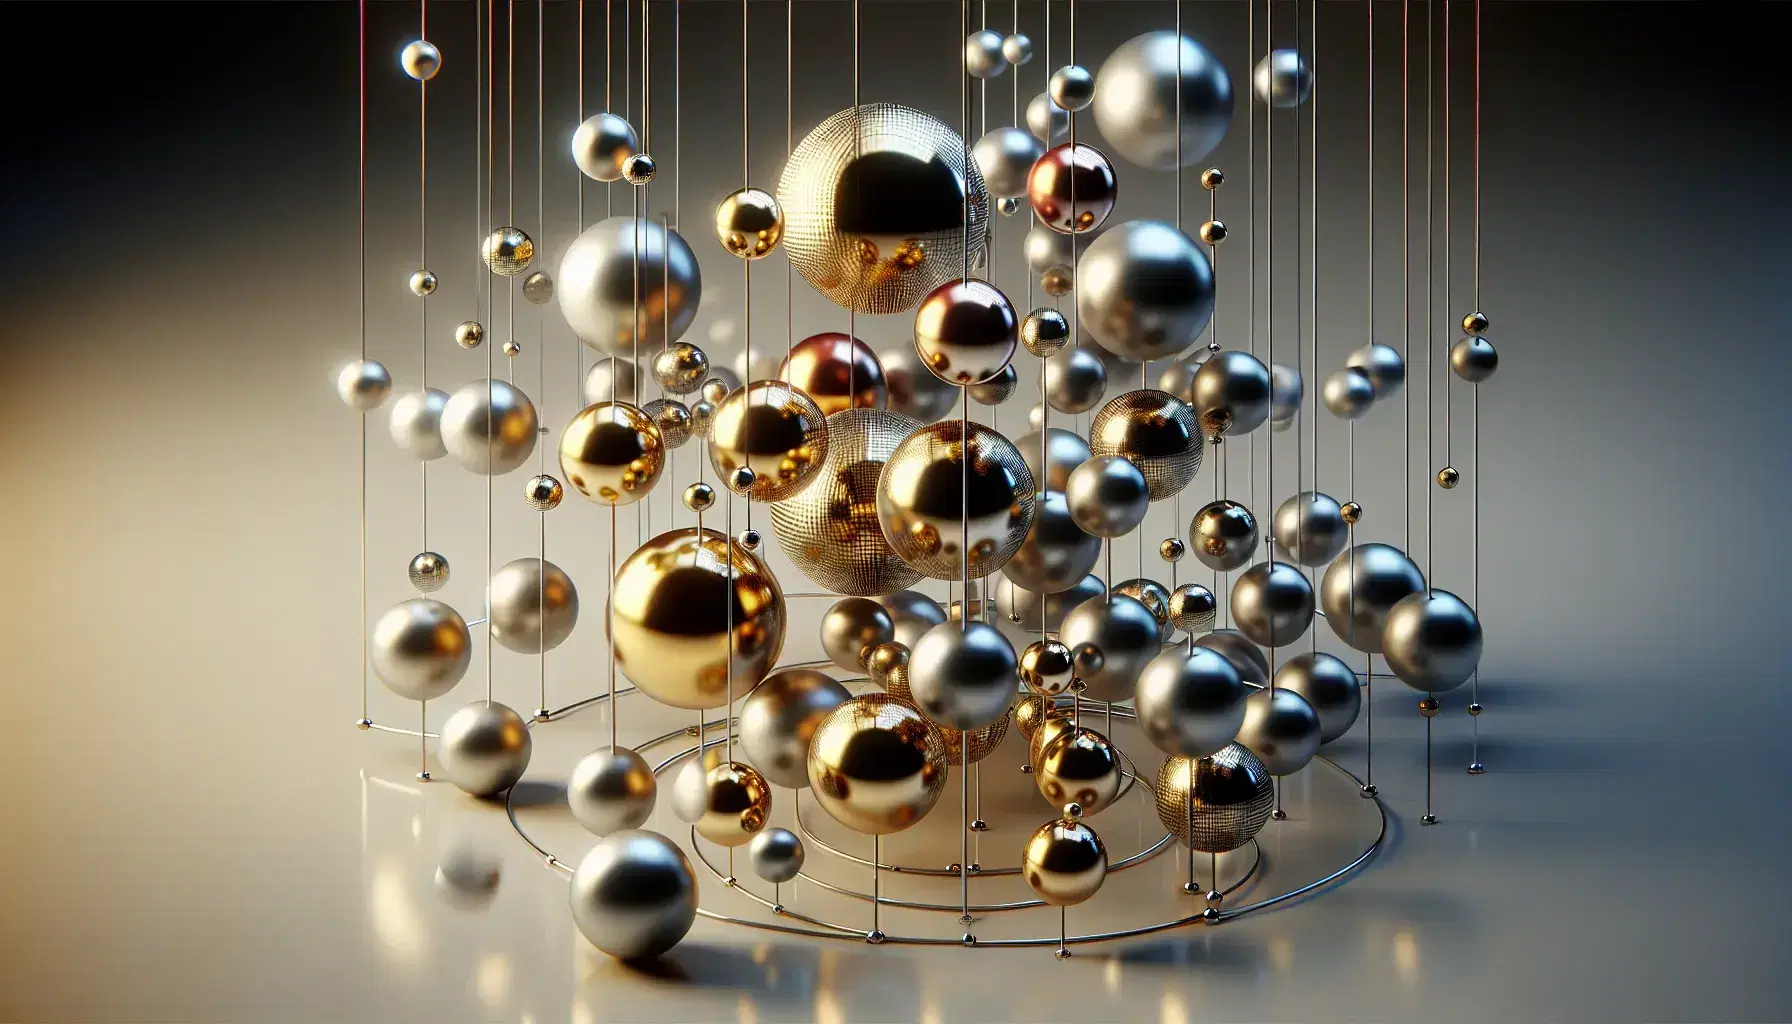 Estructura tridimensional de esferas metálicas doradas y plateadas interconectadas por varillas, con juego de luces y sombras sobre fondo oscuro.